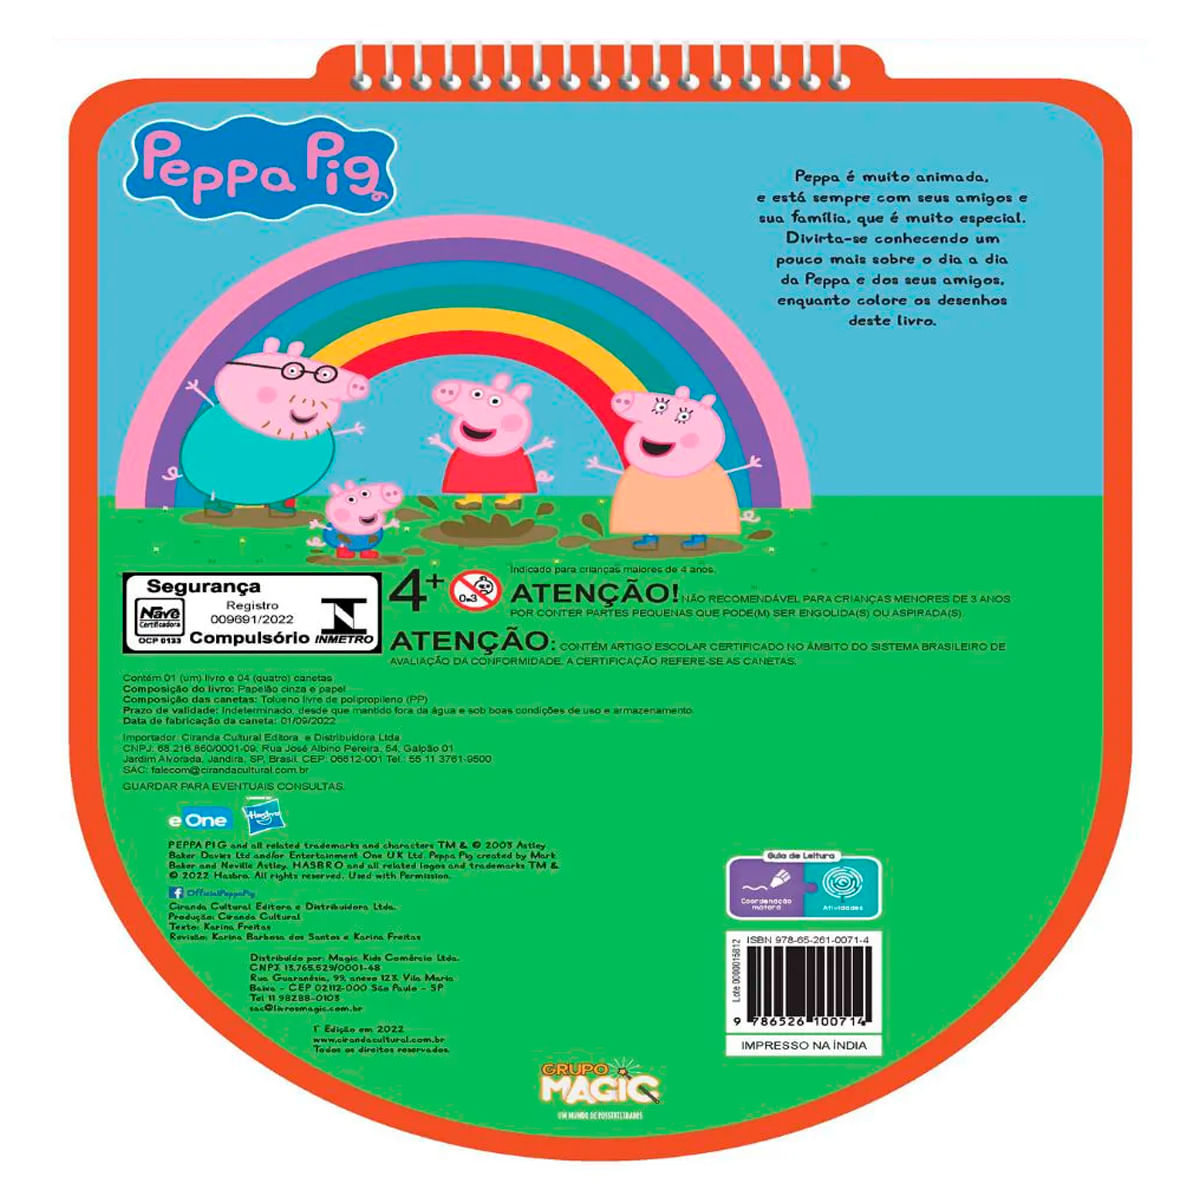 Livro Infantil 365 Atividades E Desenhos Colorir Peppa Pig na